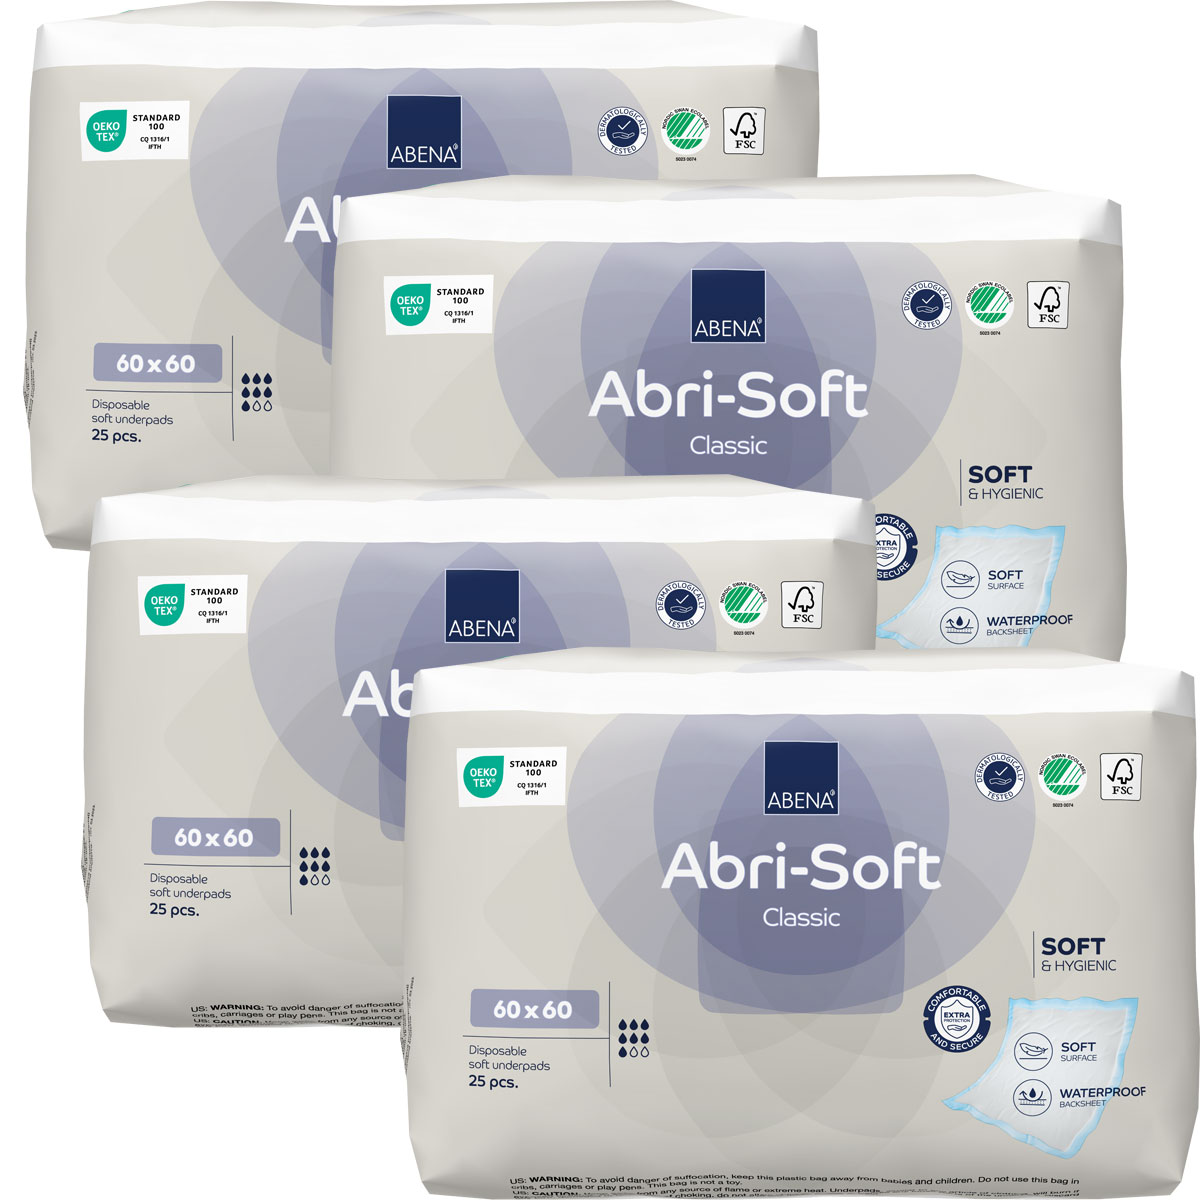 ABENA Abri-Soft CLASSIC Betteinlagen 60 x 60cm - 4x25 (100) Stück